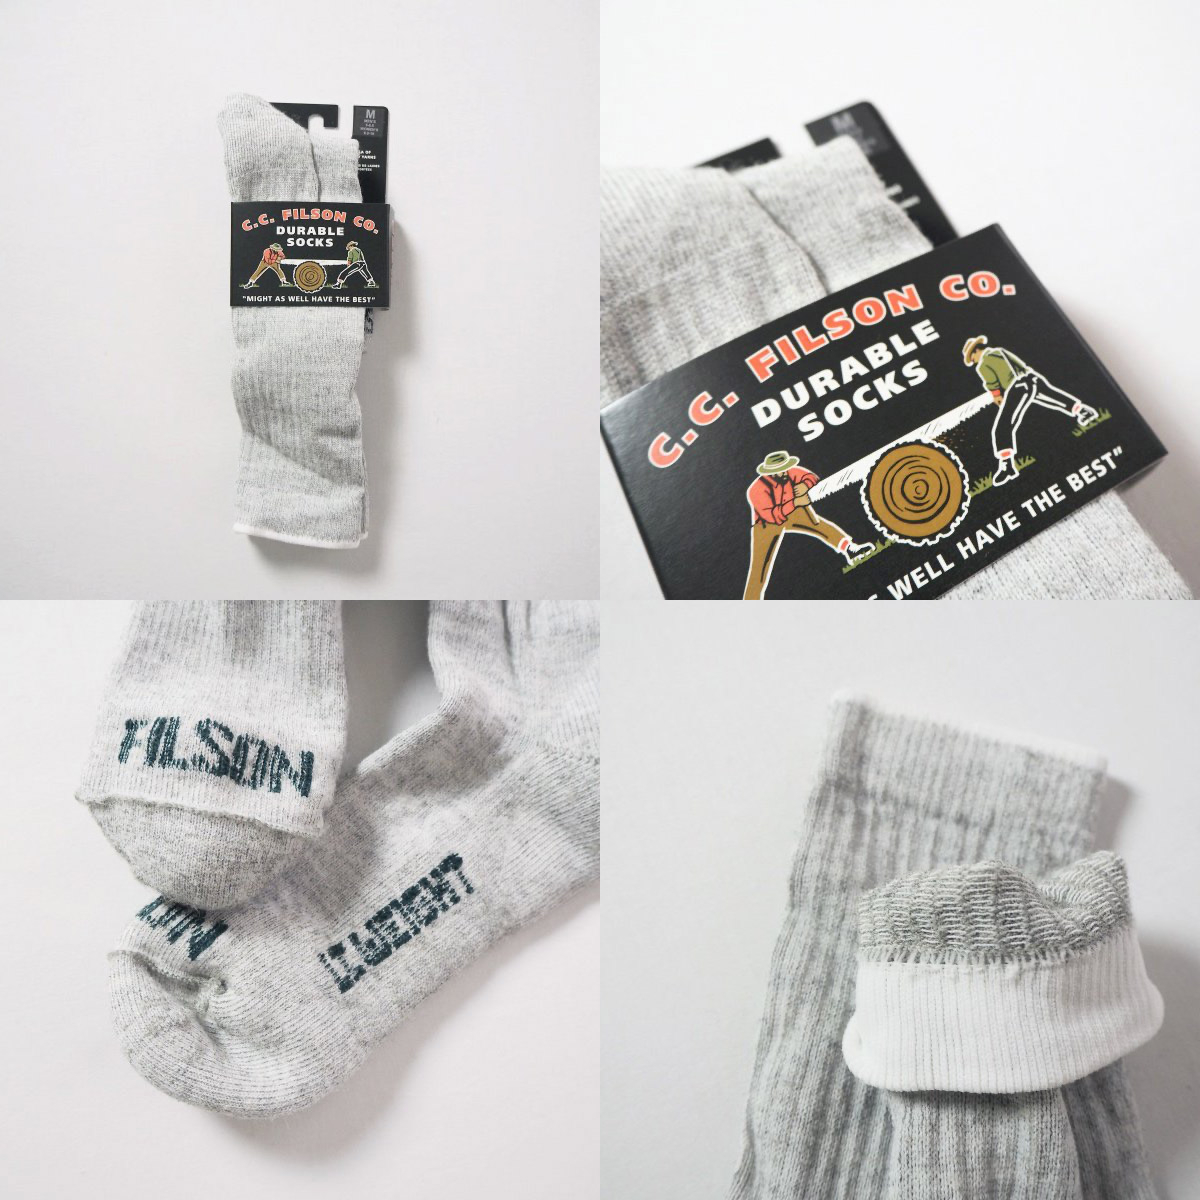 Filson Lightweight Traditional Crew Socks gemaakt van merino wol met een vleugje nylon en spandex